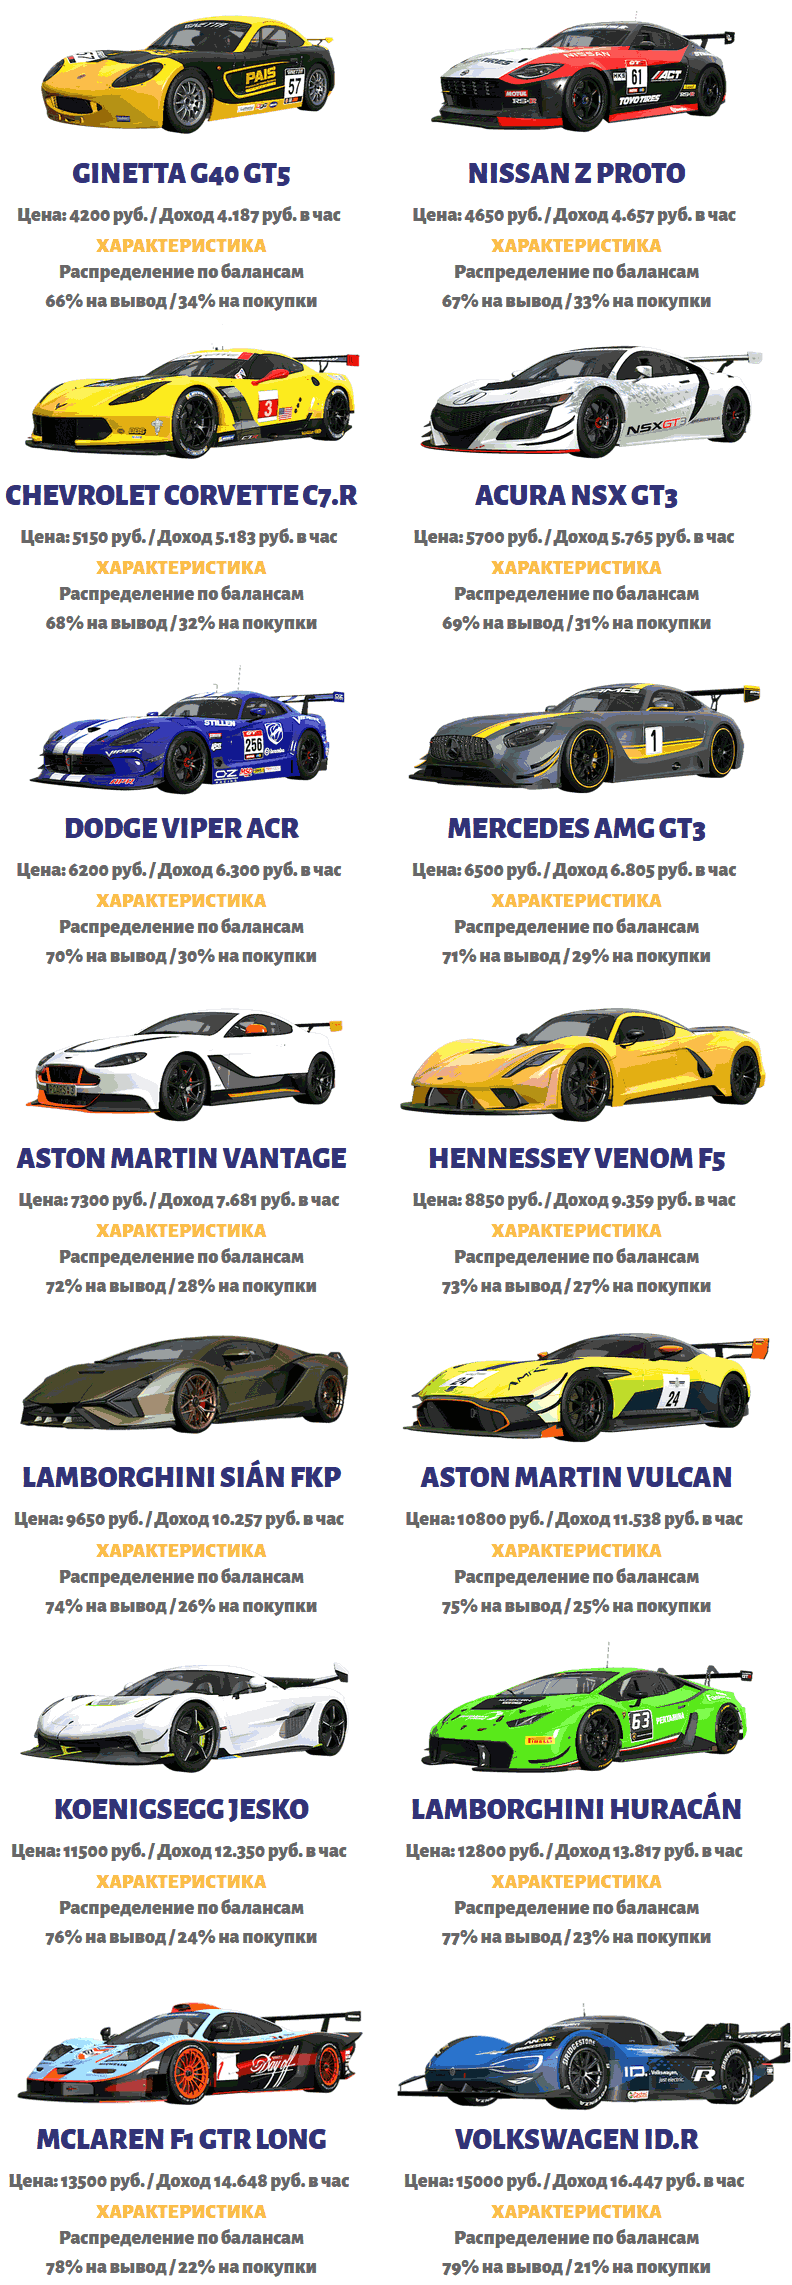 Маркетинг Grid-Autosport - суперкары - скрин 2